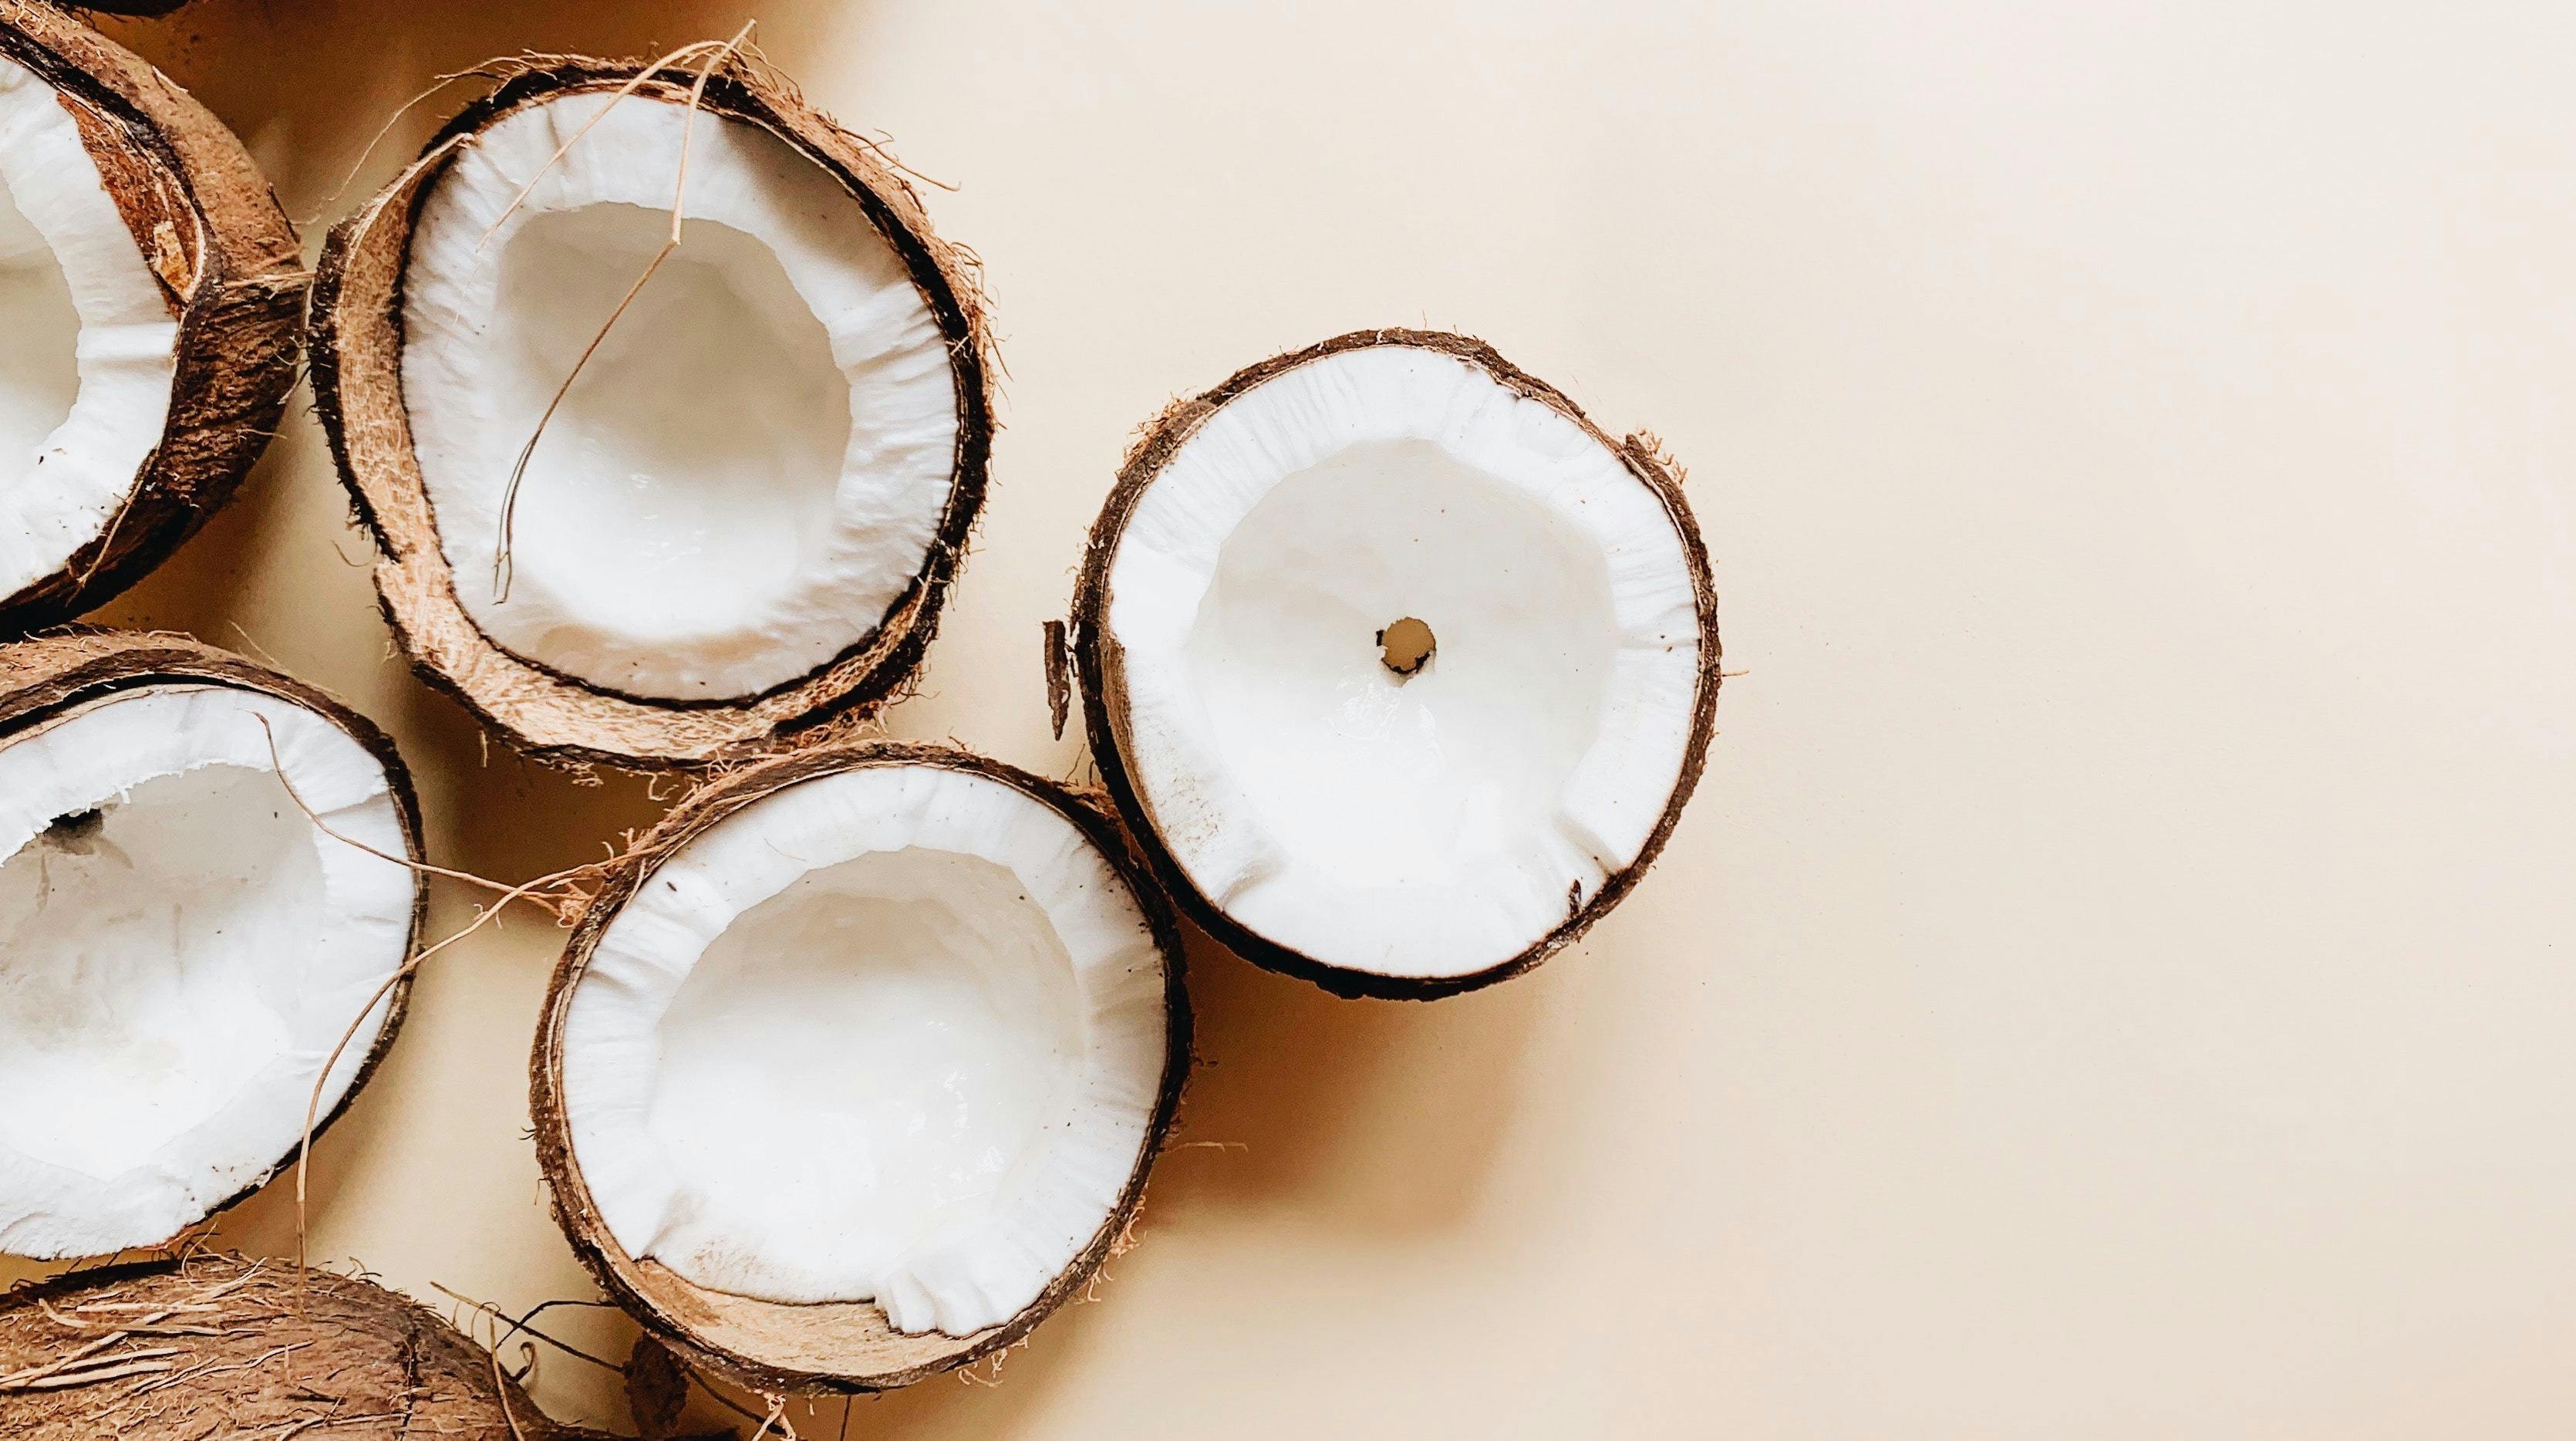 Huile de coco : 5 bienfaits pour la peau, le corps, et les cheveux